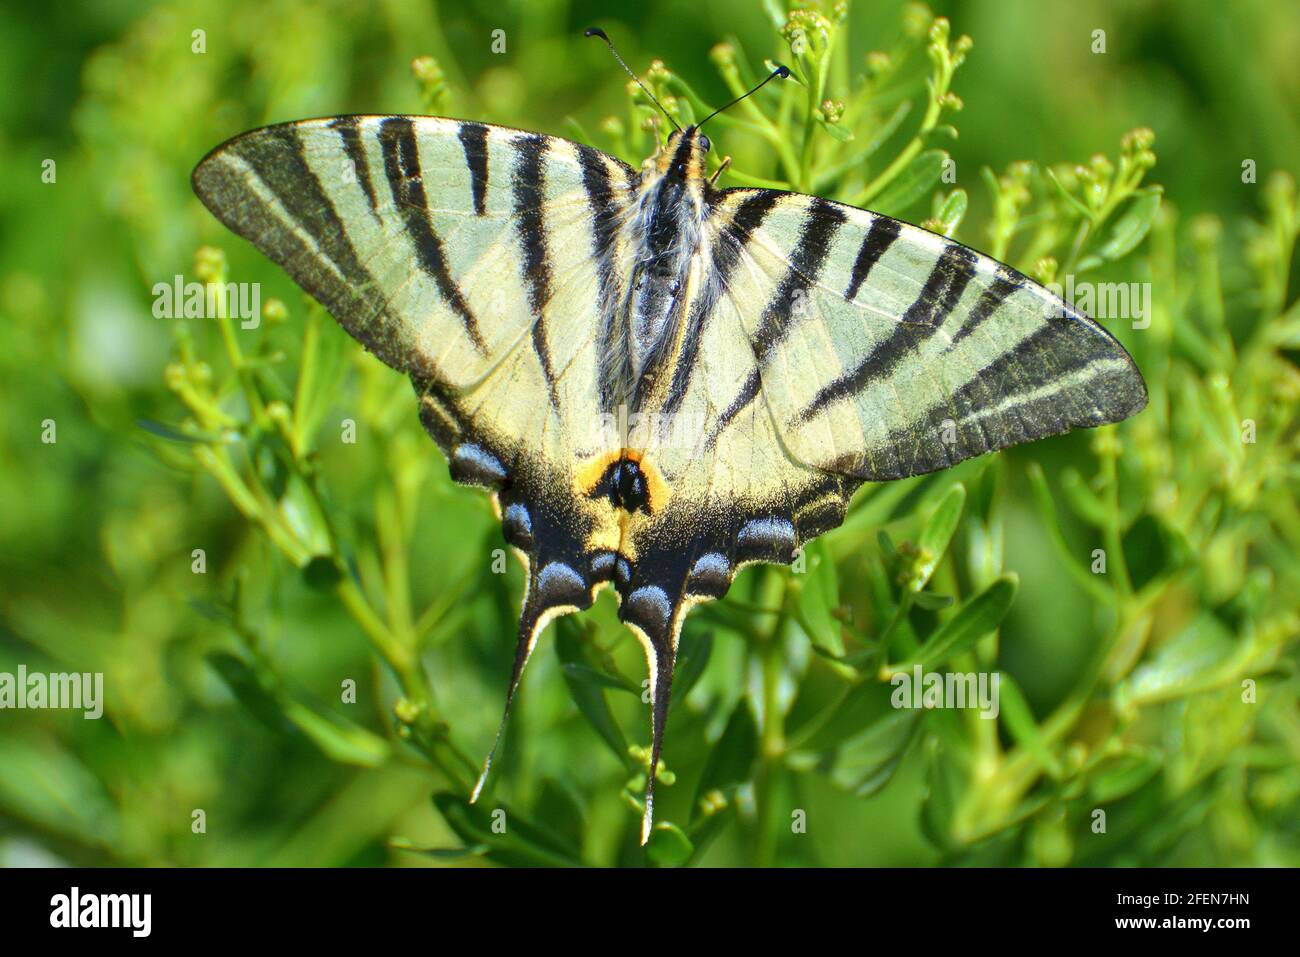 France, Aquitaine, le battant est un beau papillon avec des bandes noires sur son aile jaune et une grande queue. Banque D'Images